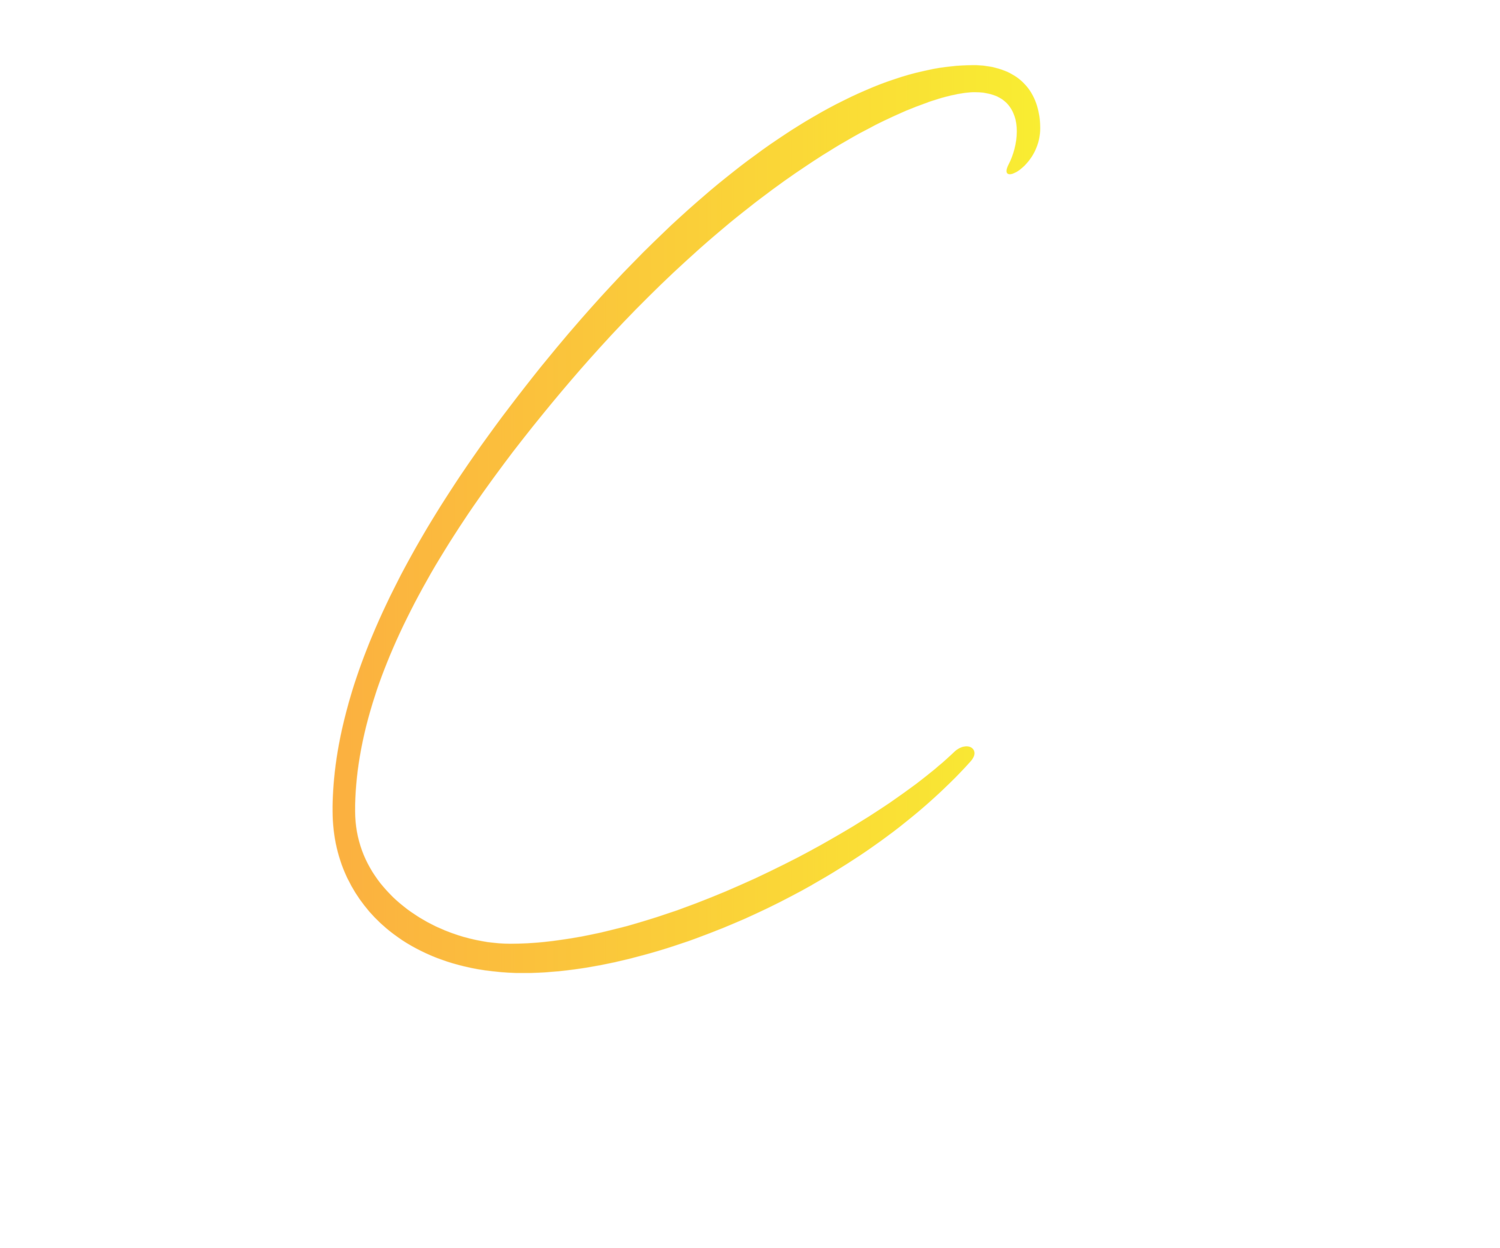 Cloud 9 Resorts